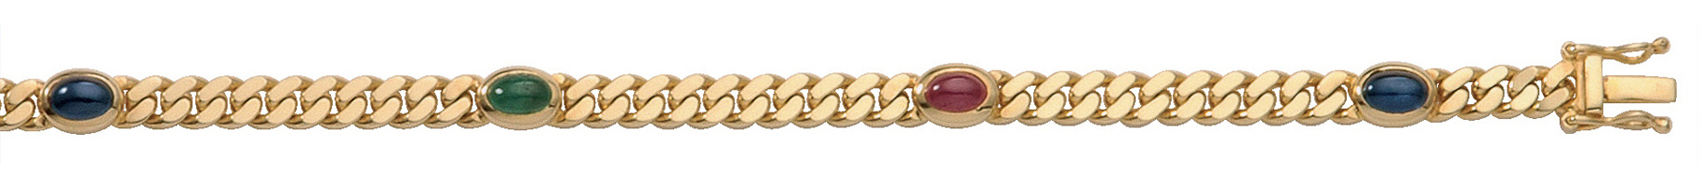 Armband Gold 585/GG, Rubin, Safir, Smaragd